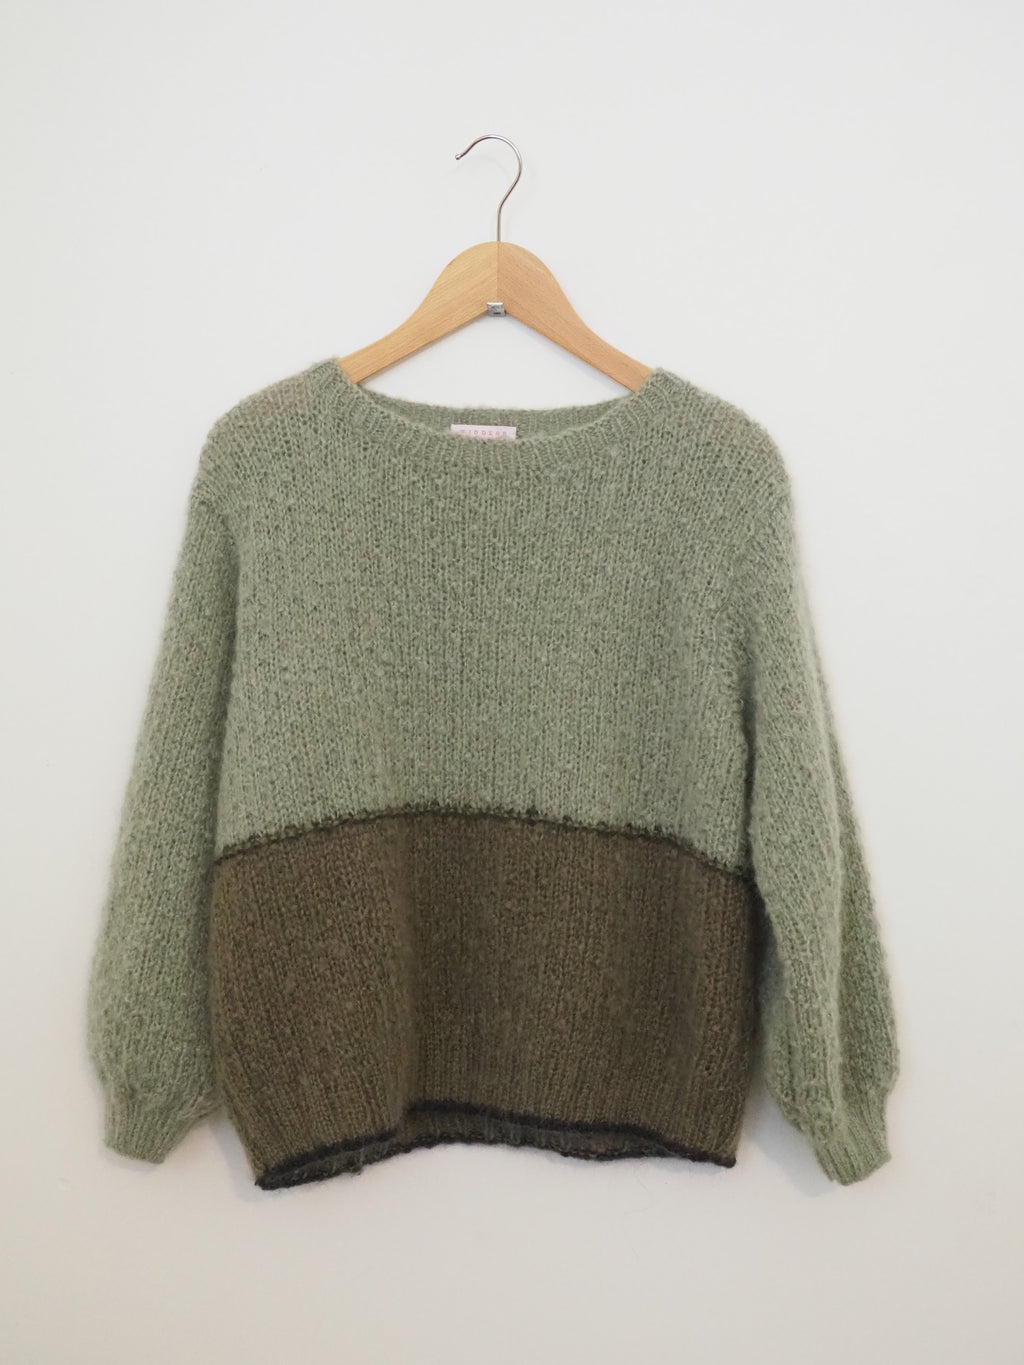 Hand knit jumper - Huia